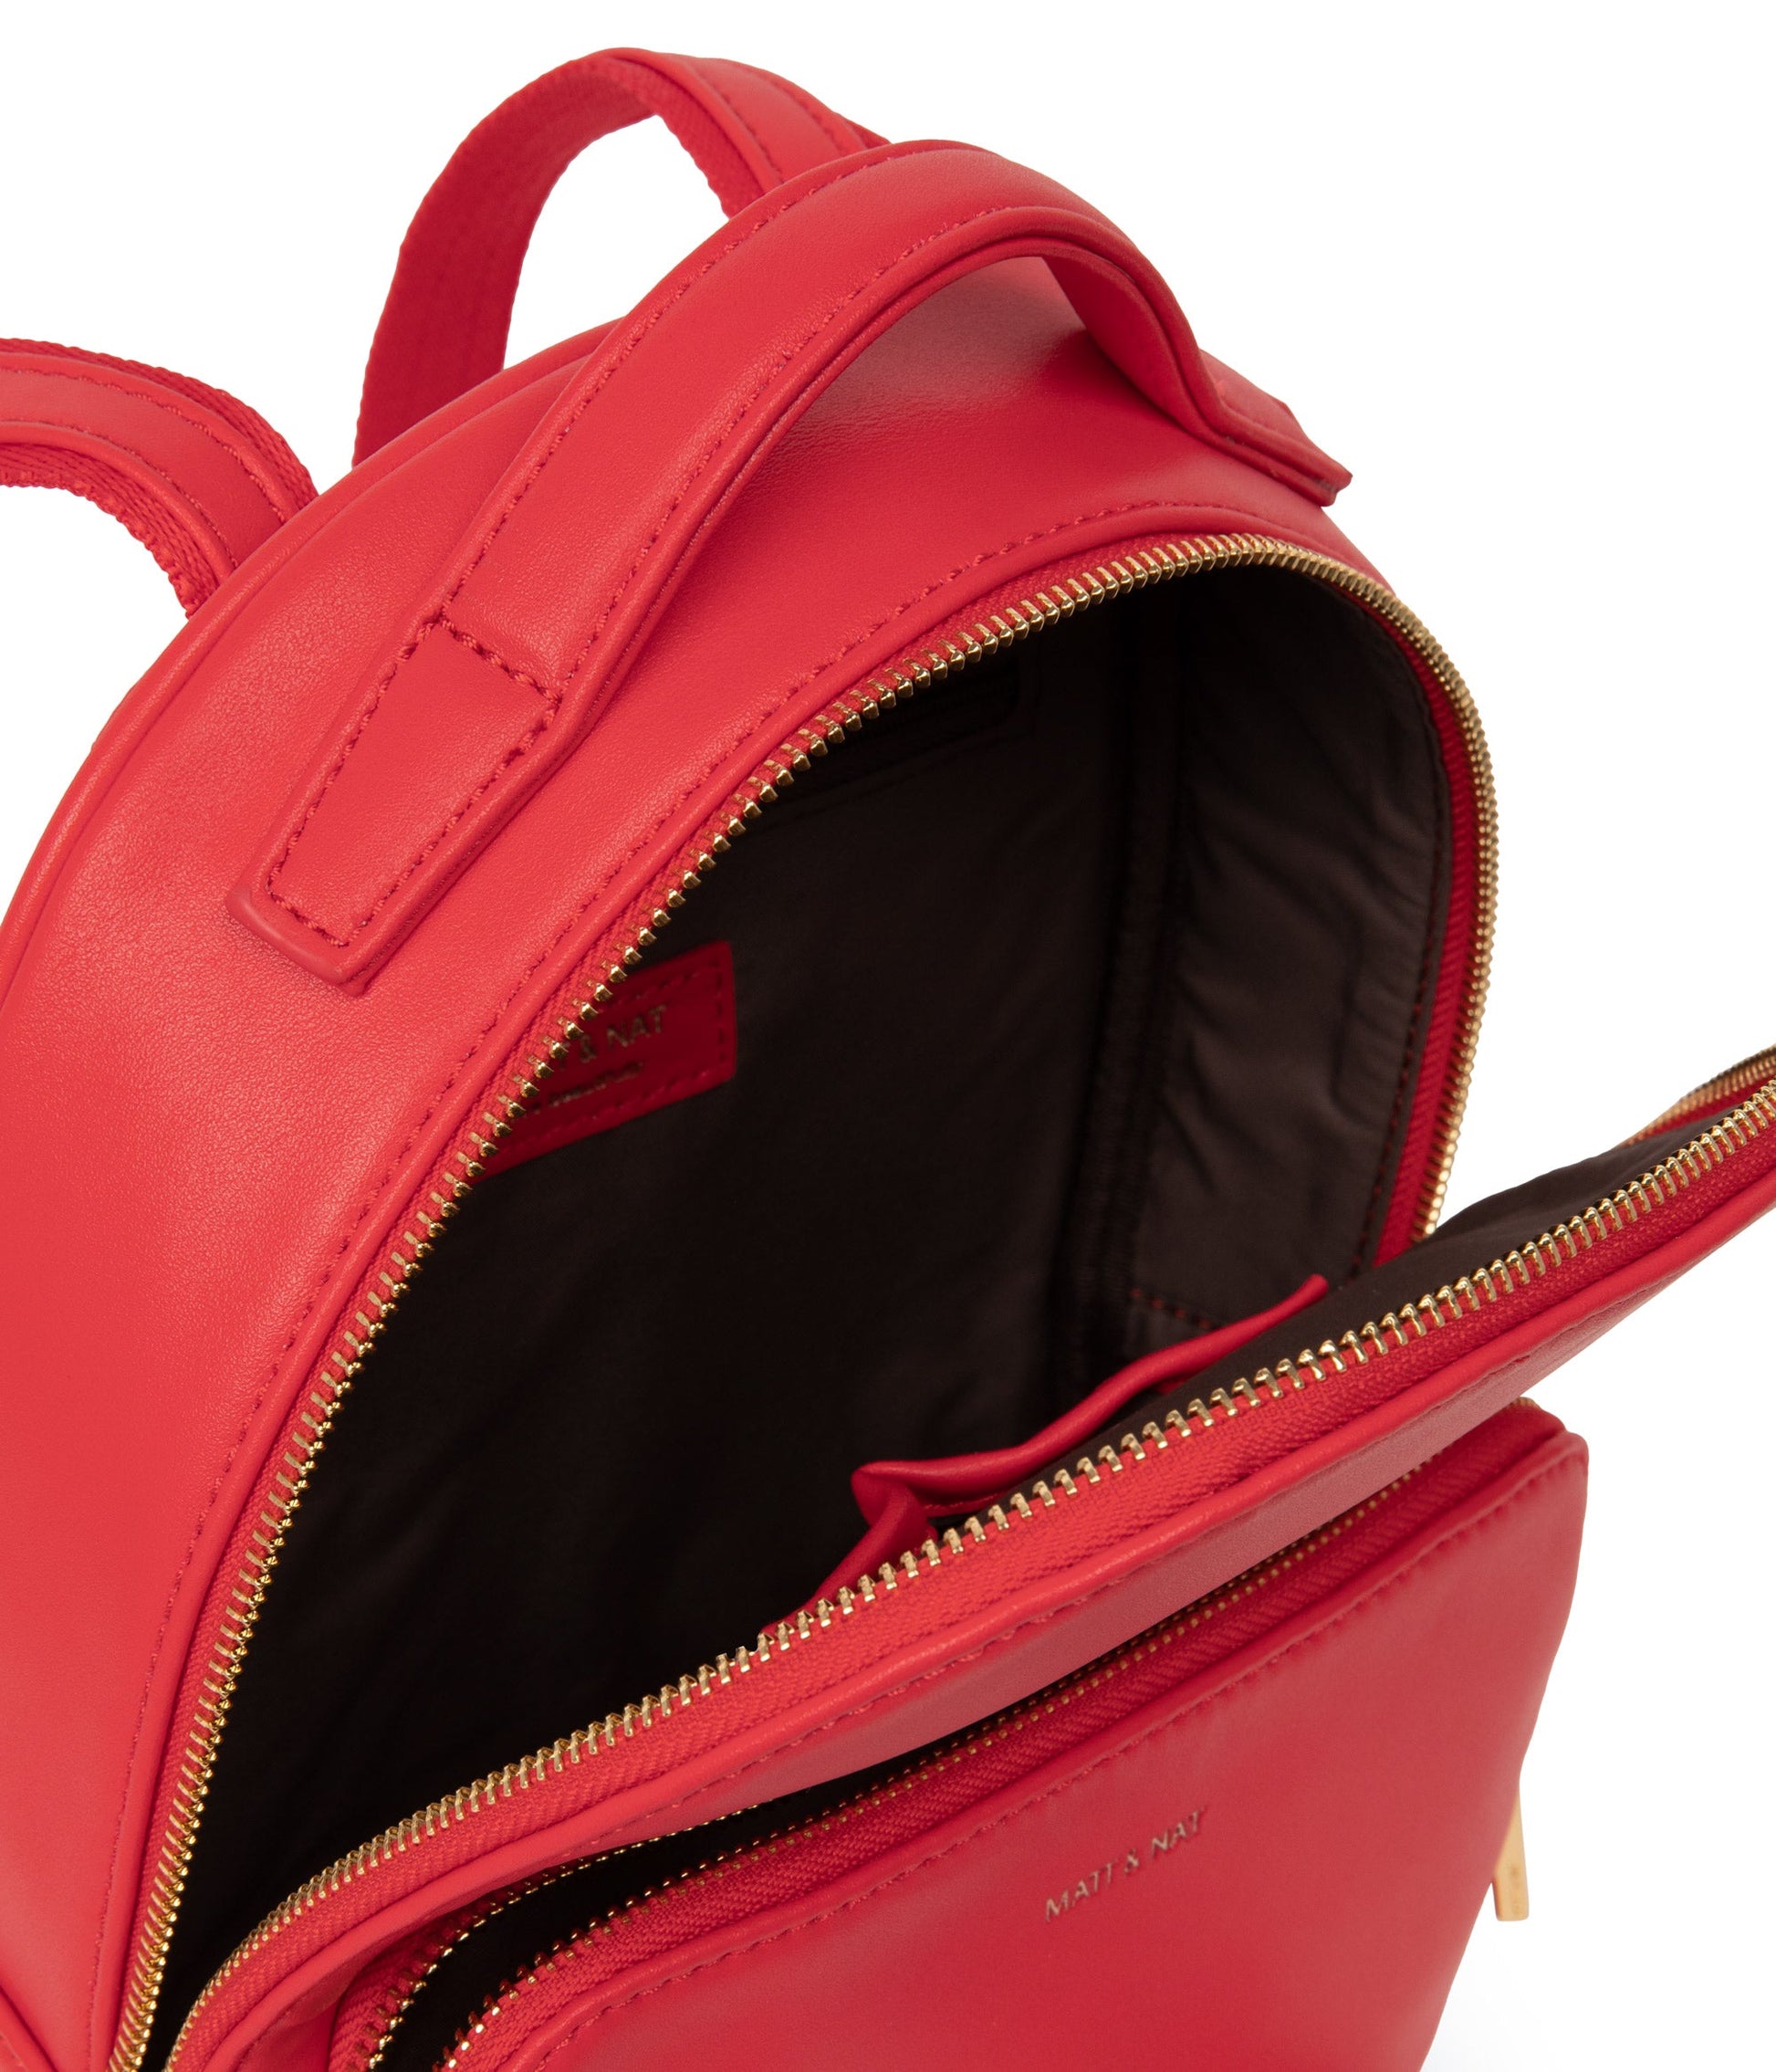 CAROSM Small Vegan Backpack - Sol | Color: Red - variant::sorbet